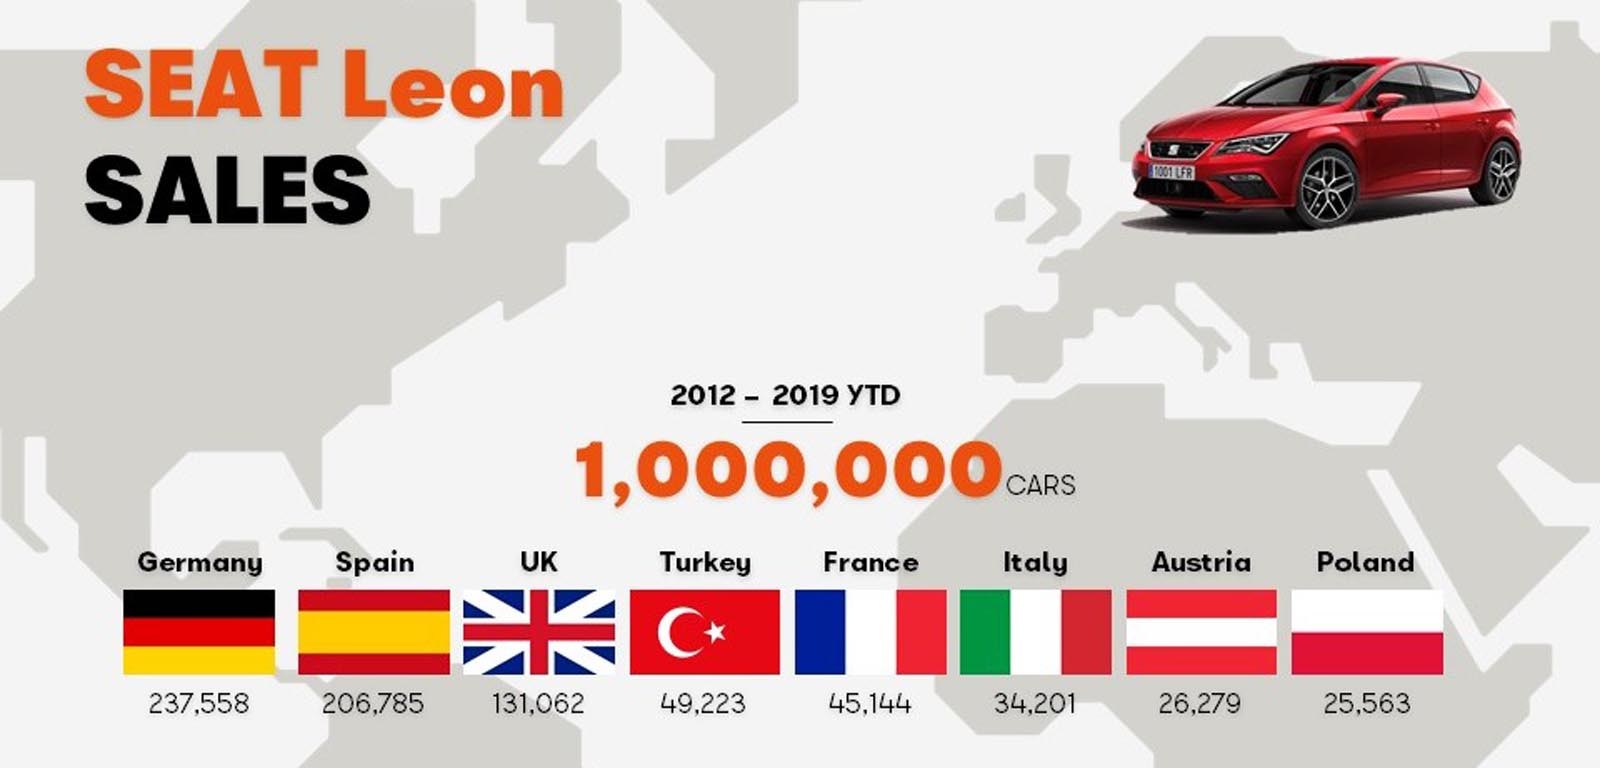 Το Leon έφτασε το 1 εκατομμύριο πωλήσεις από το λανσάρισμα του το 2012